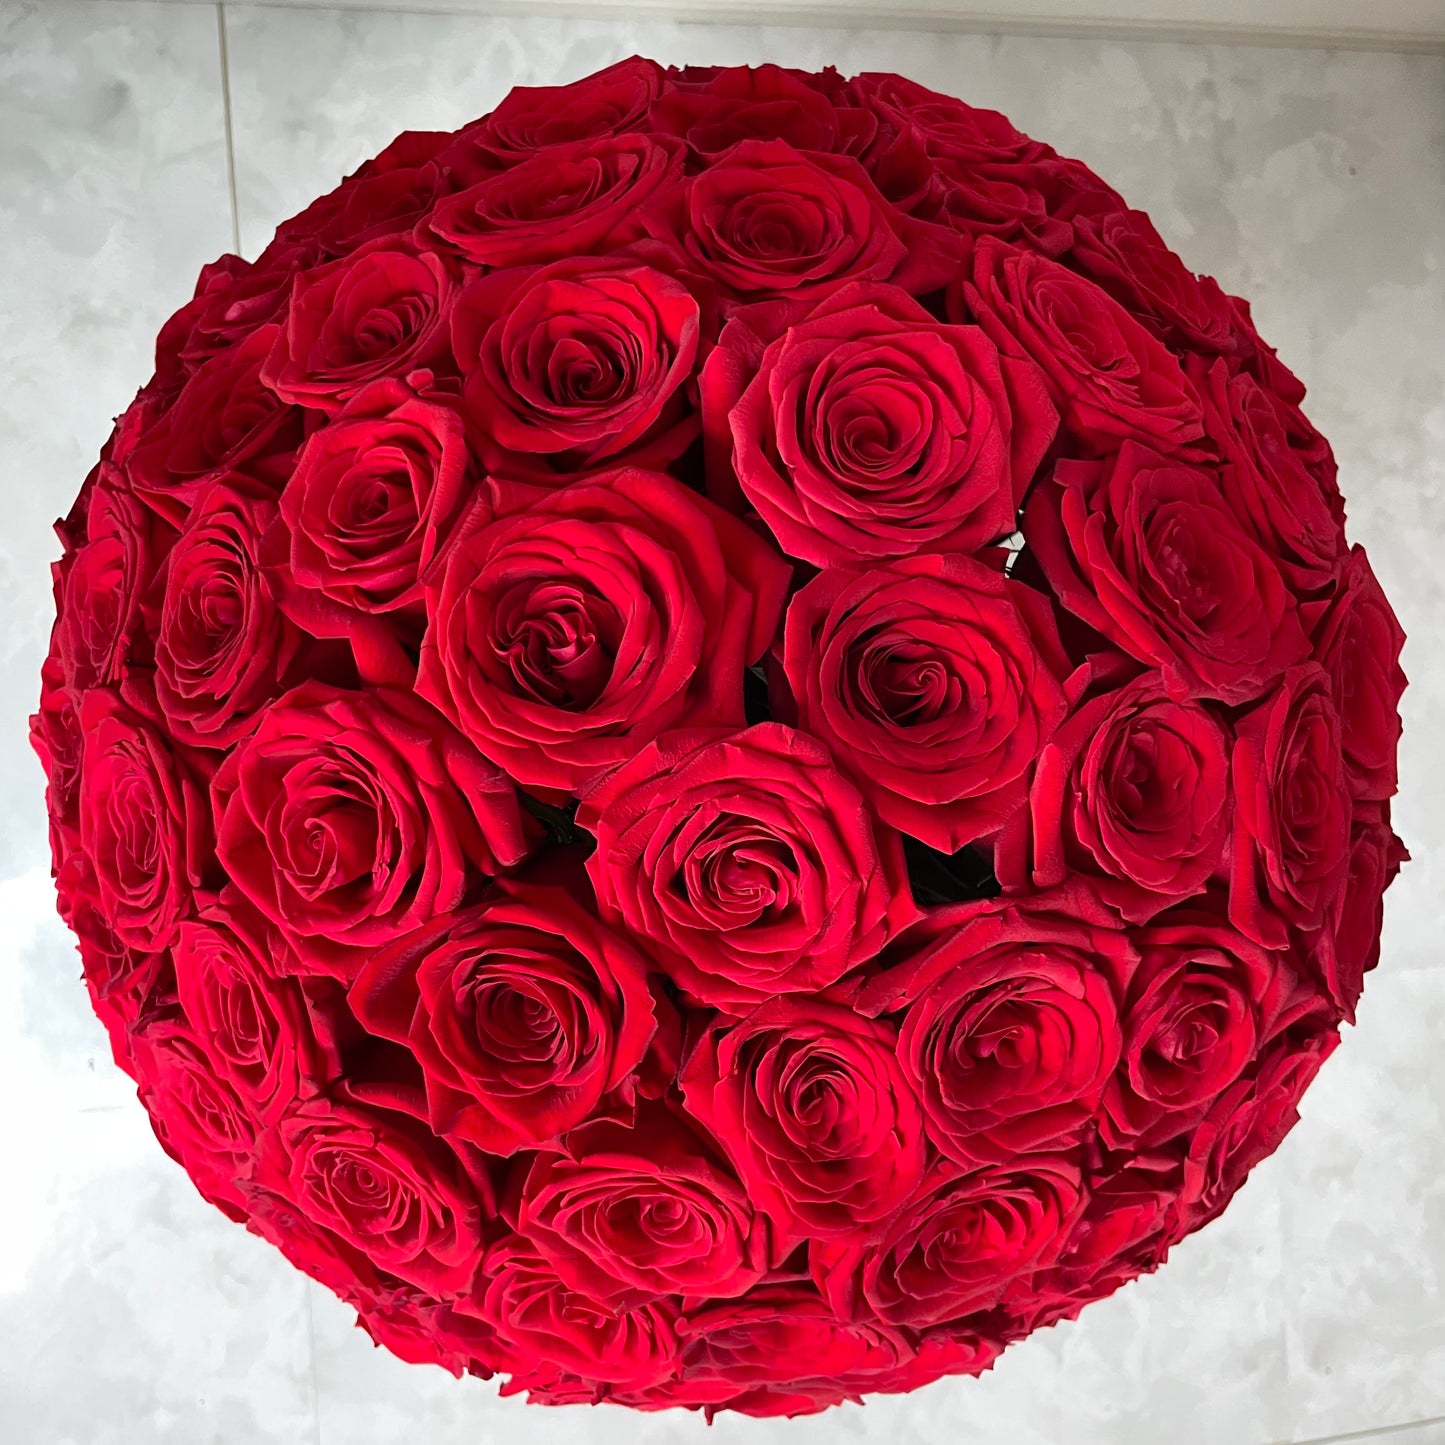 【RED BOX】プロポーズ用 赤バラ108本のドームフラワー